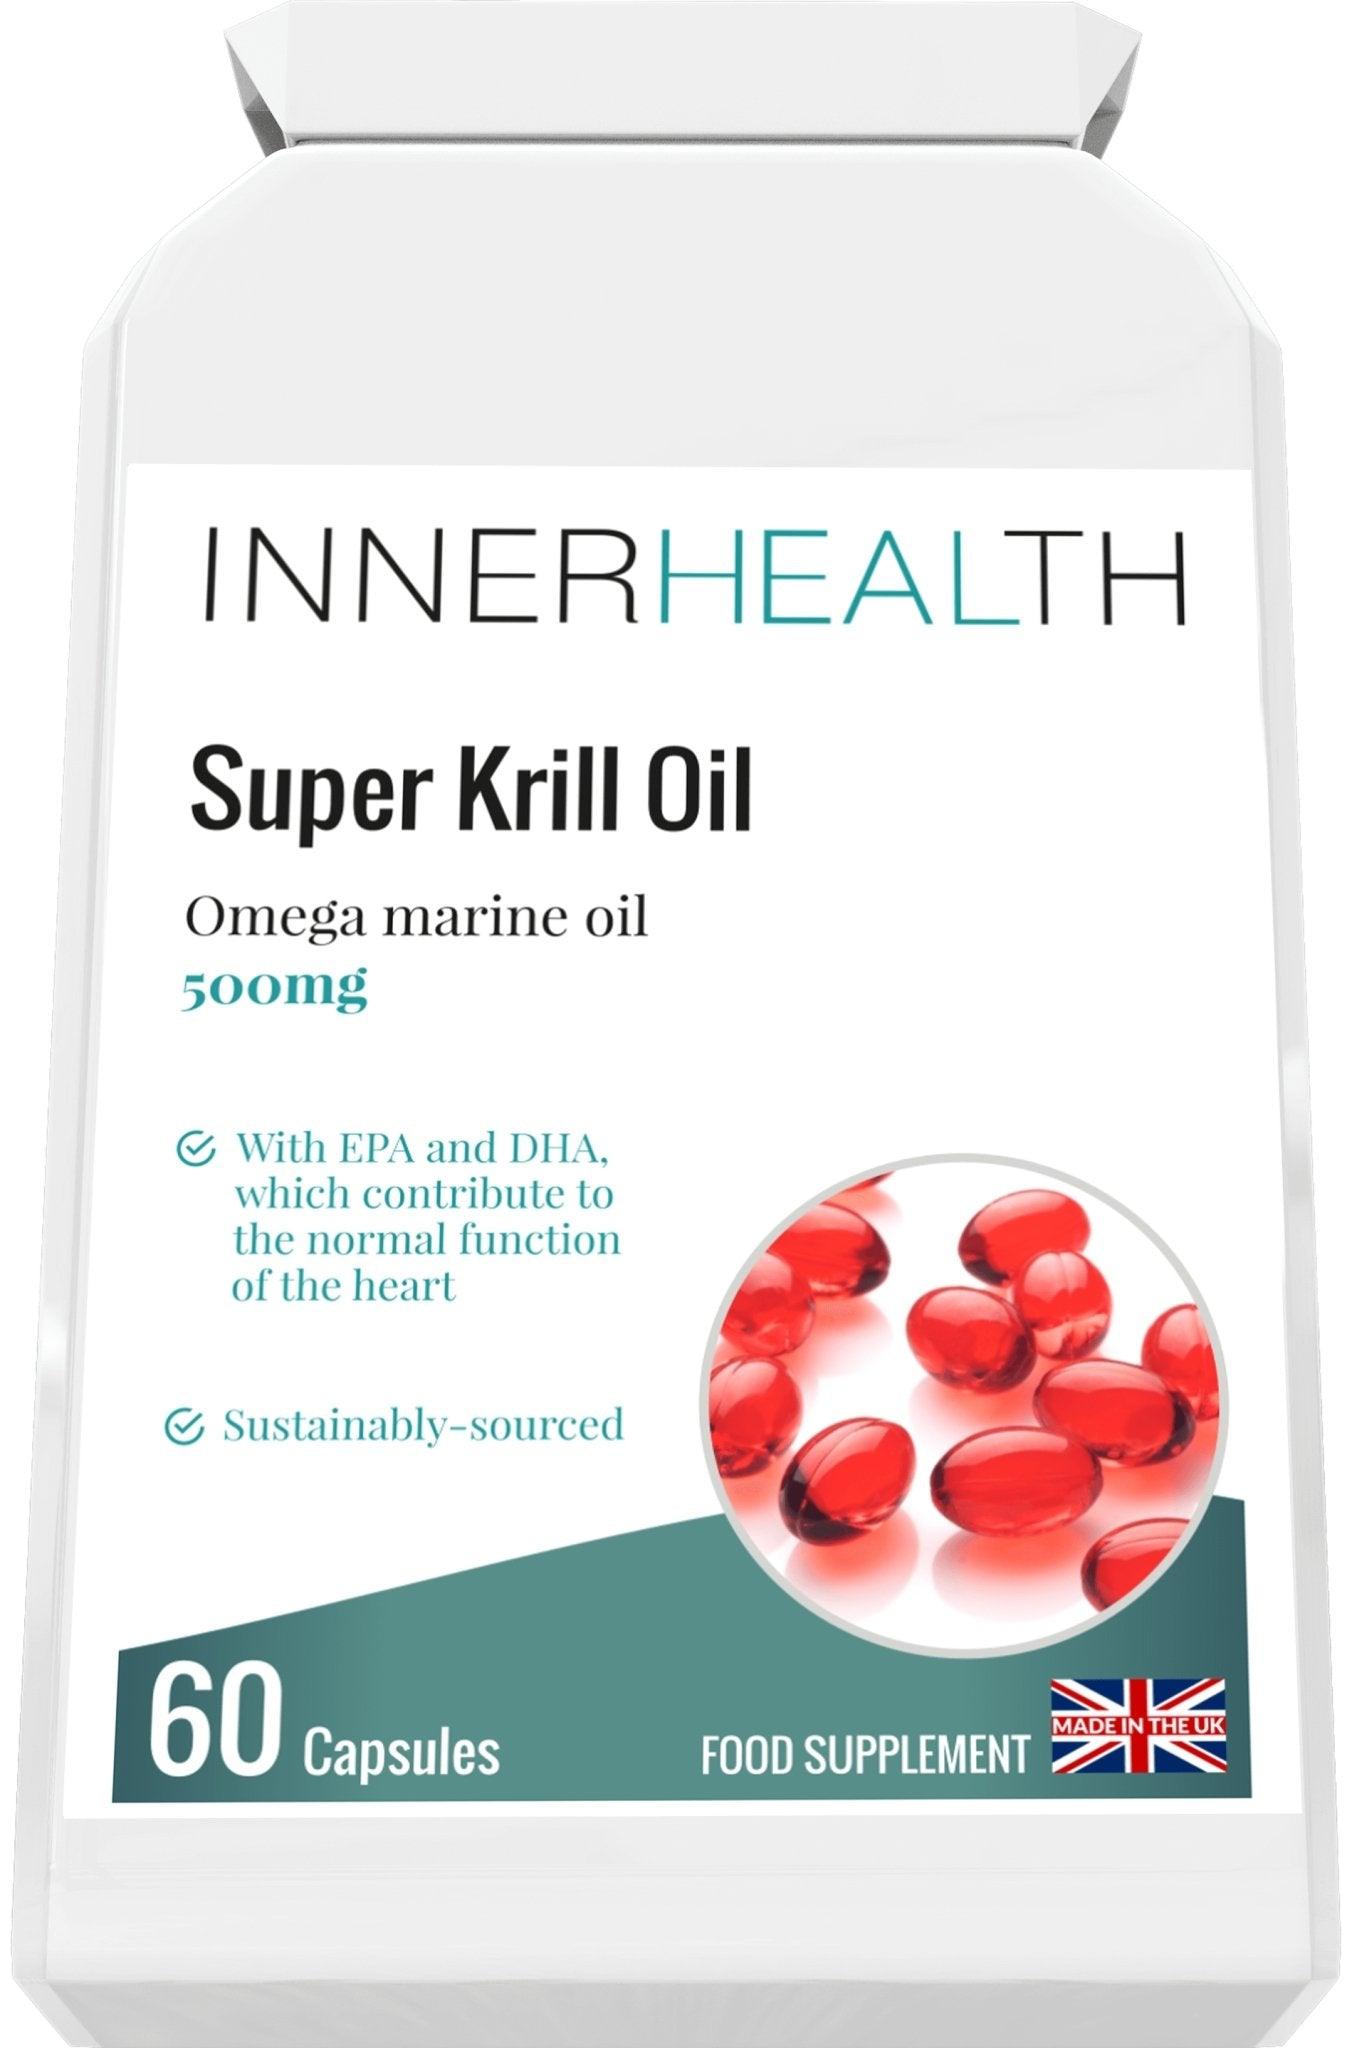 Super Krill Oil - 60 Capsules - Inner Health Clinic